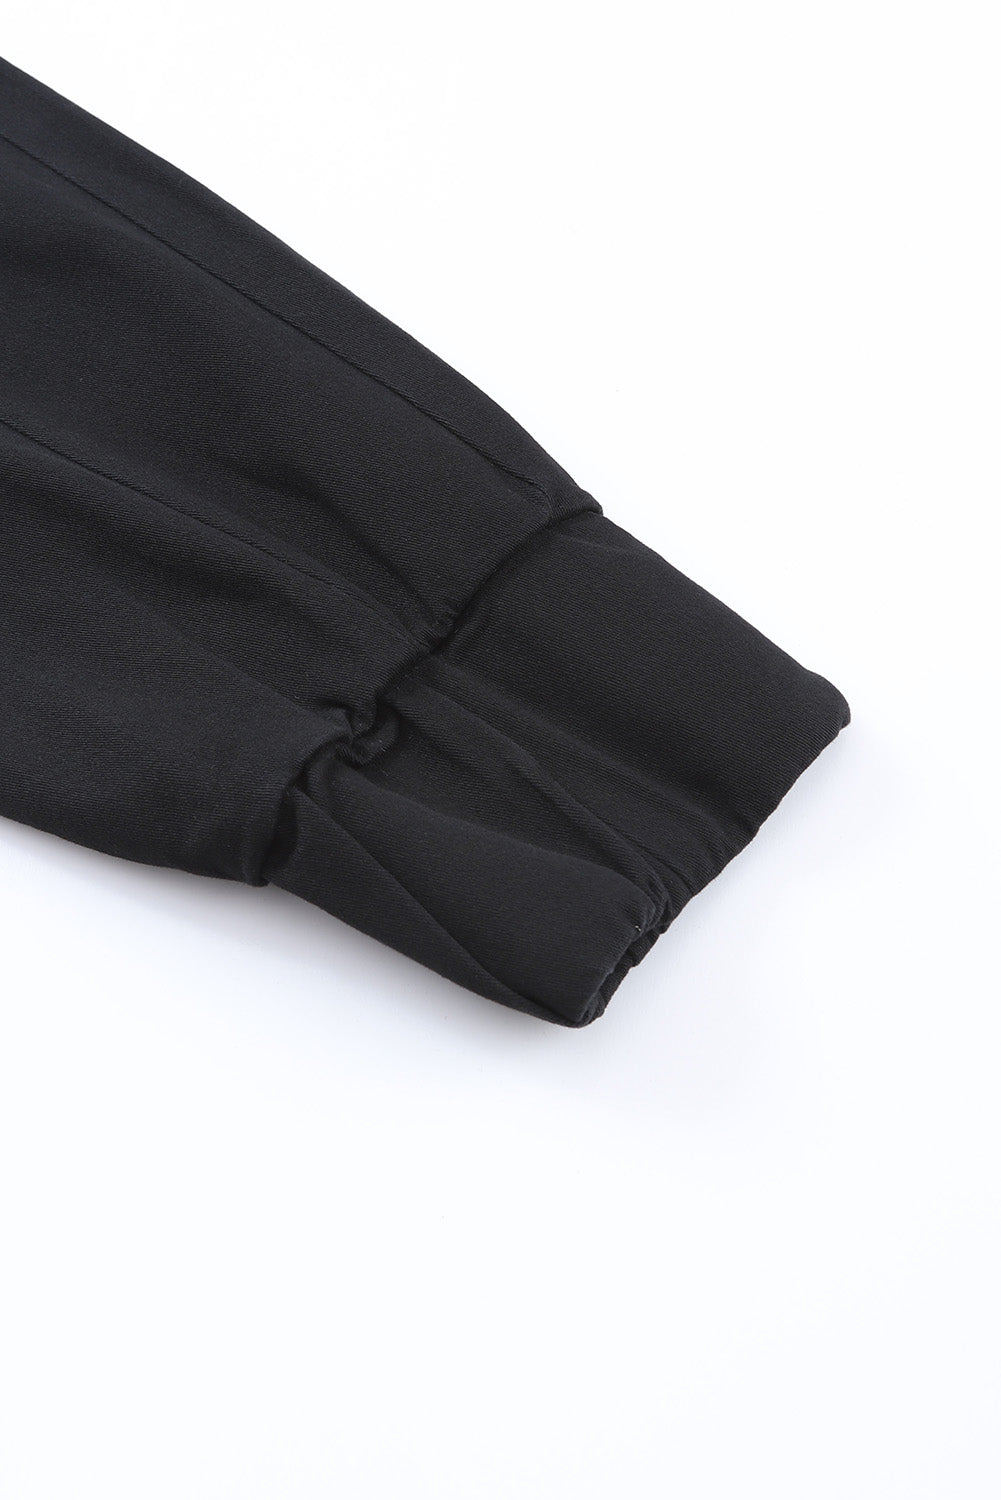 Schwarze Hose mit hoher Taille und Kordelzug und Taschen